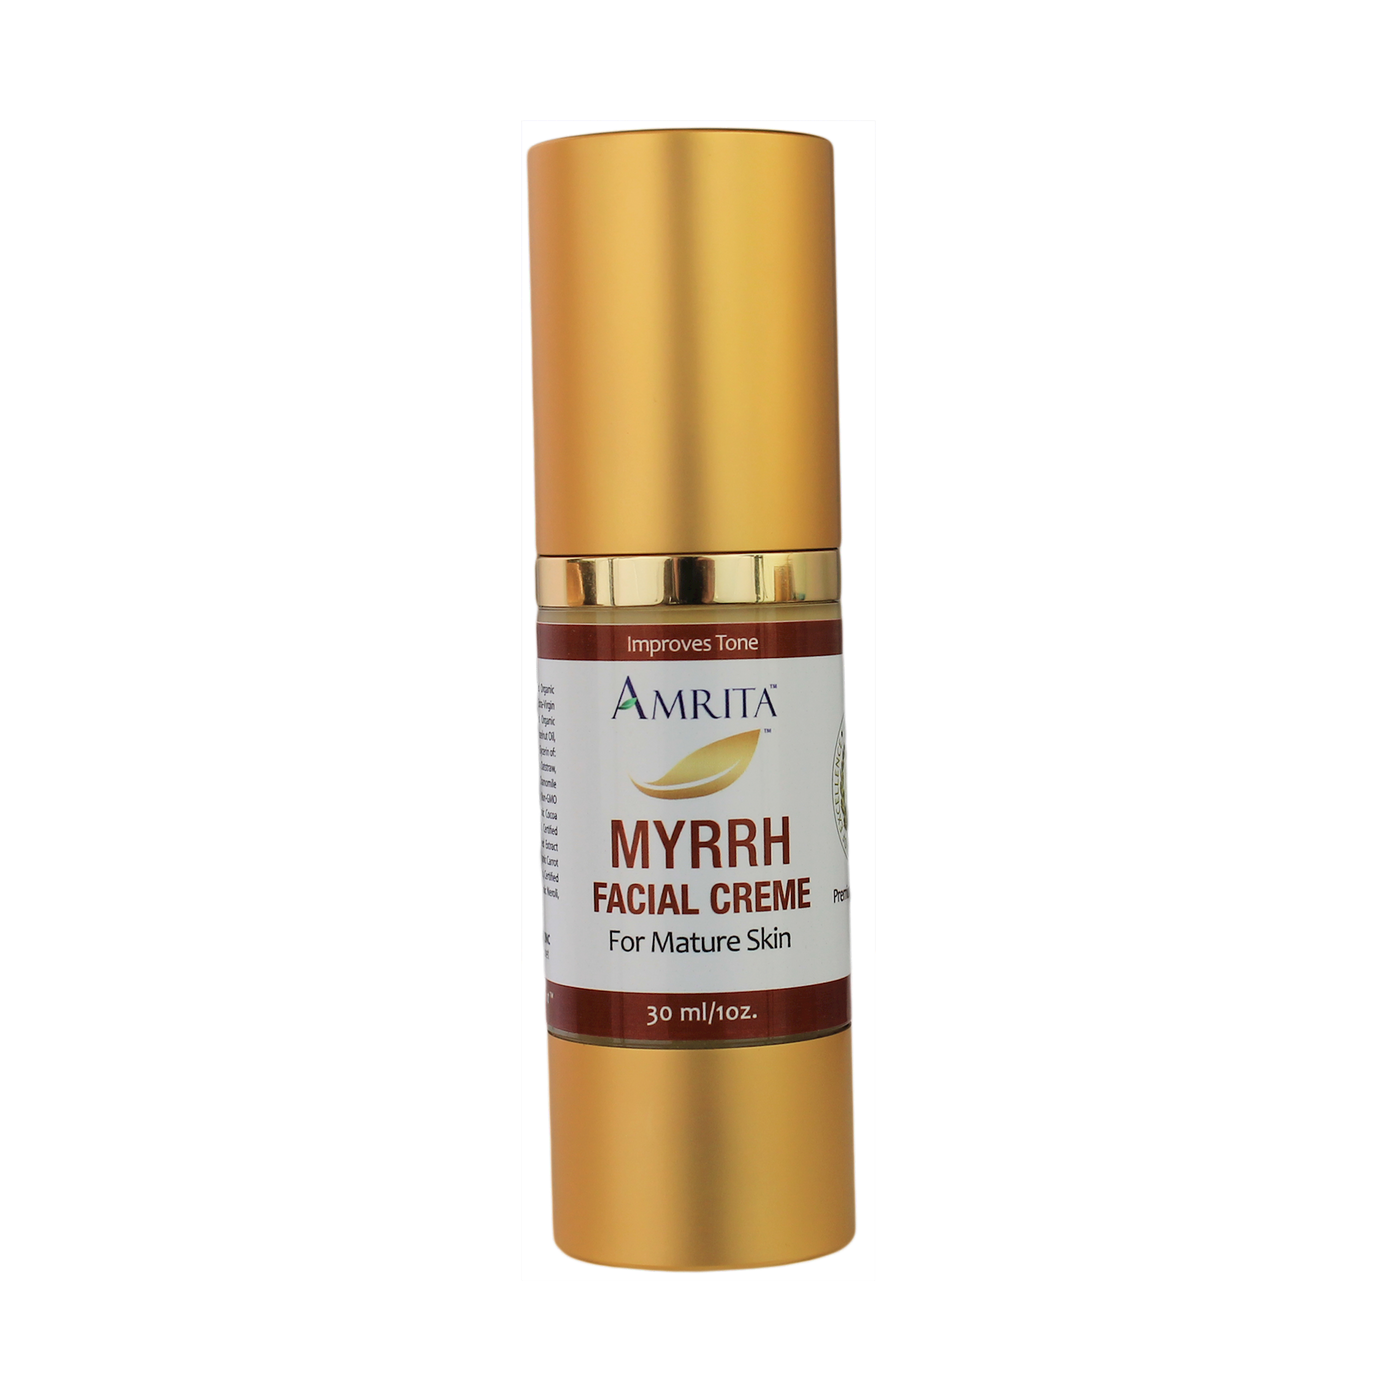 Myrrh Facial Creme for Mature Skin 1oz Curated Wellness